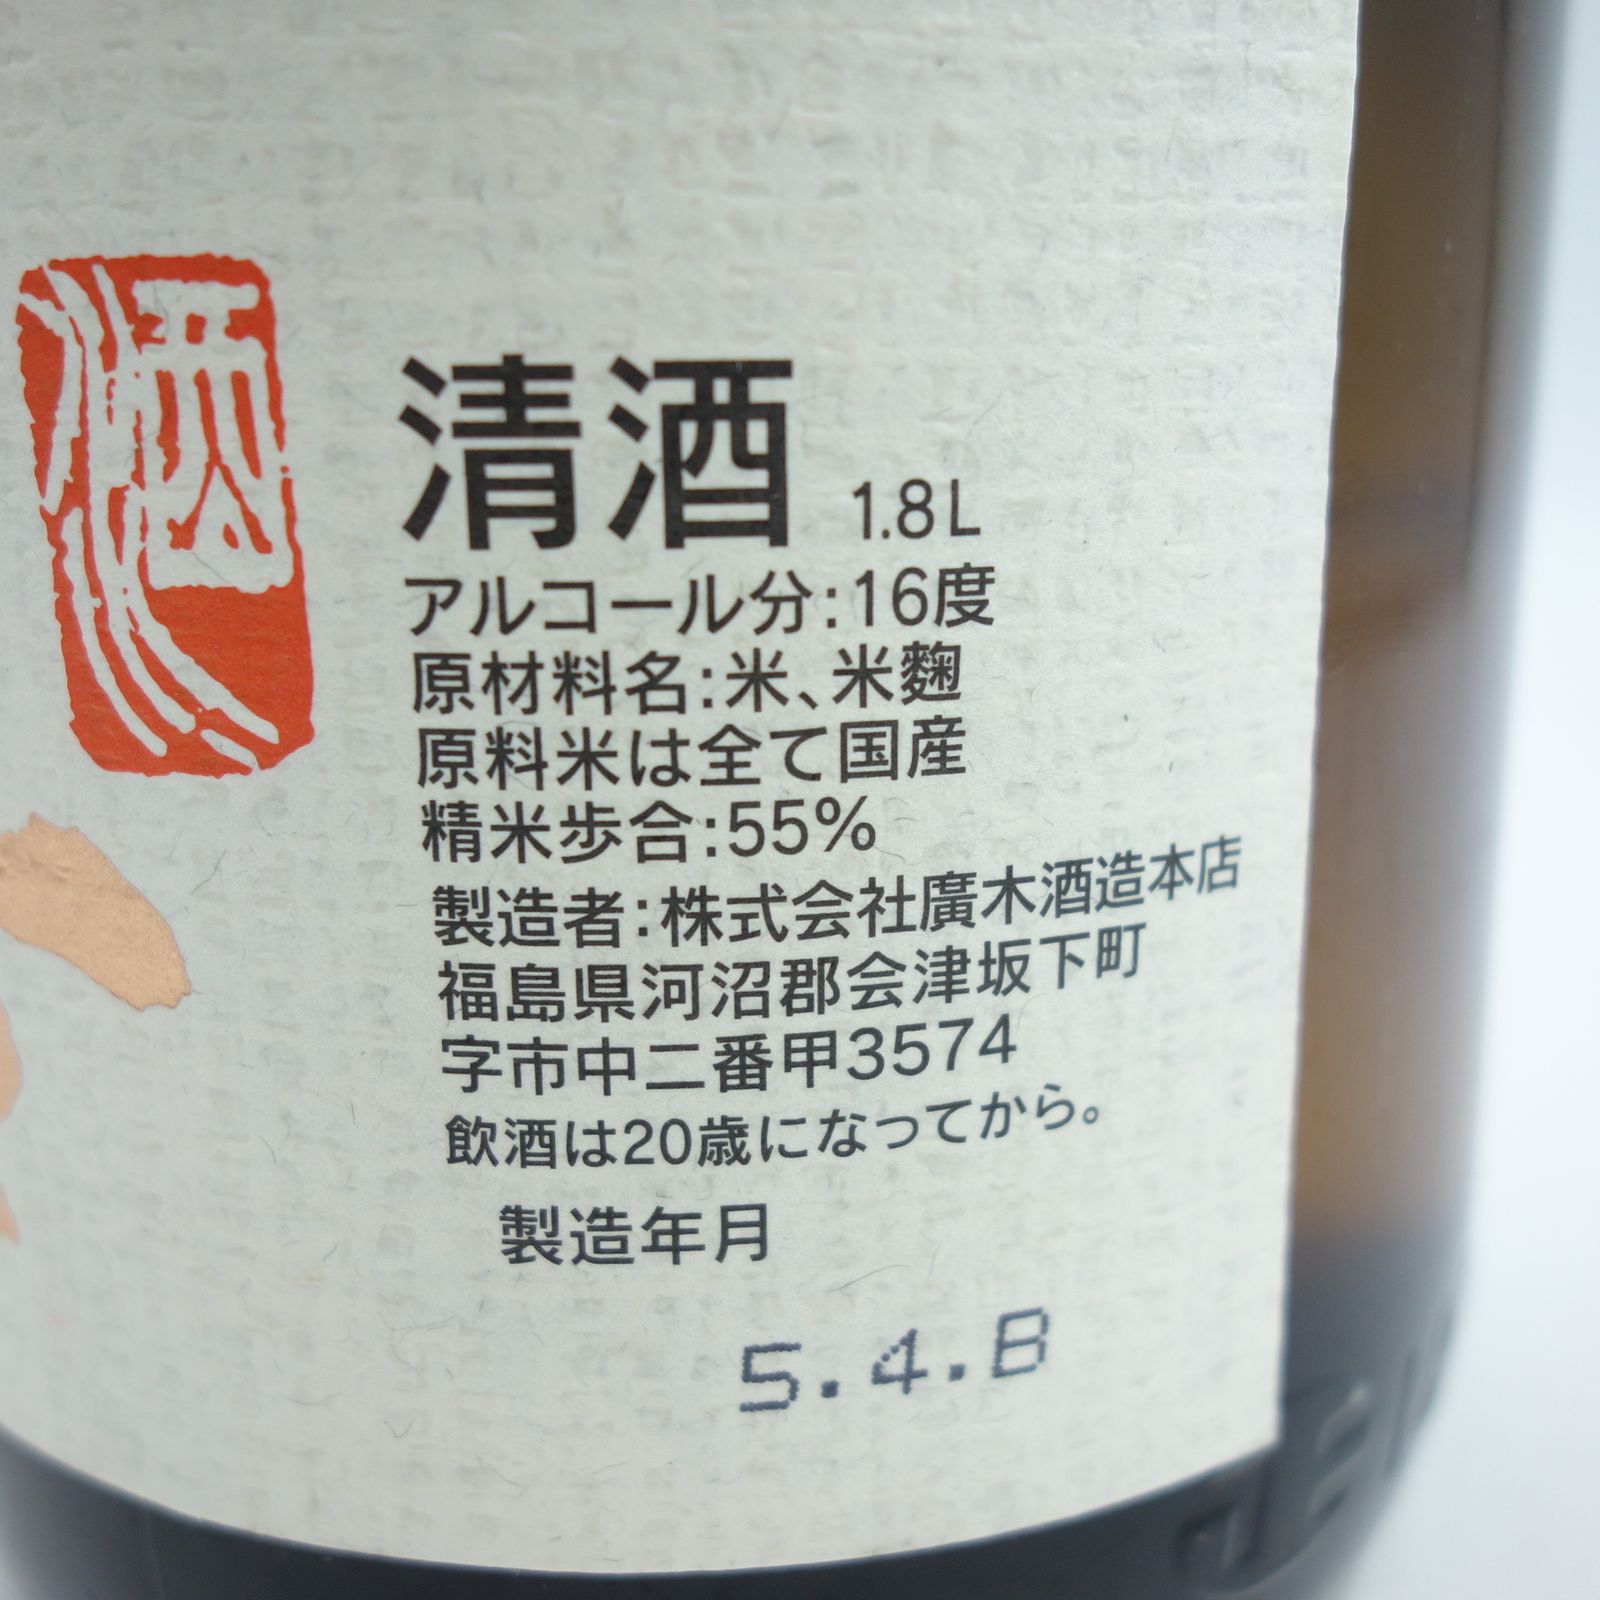 酒じこん+飛露喜1.8L - 日本酒